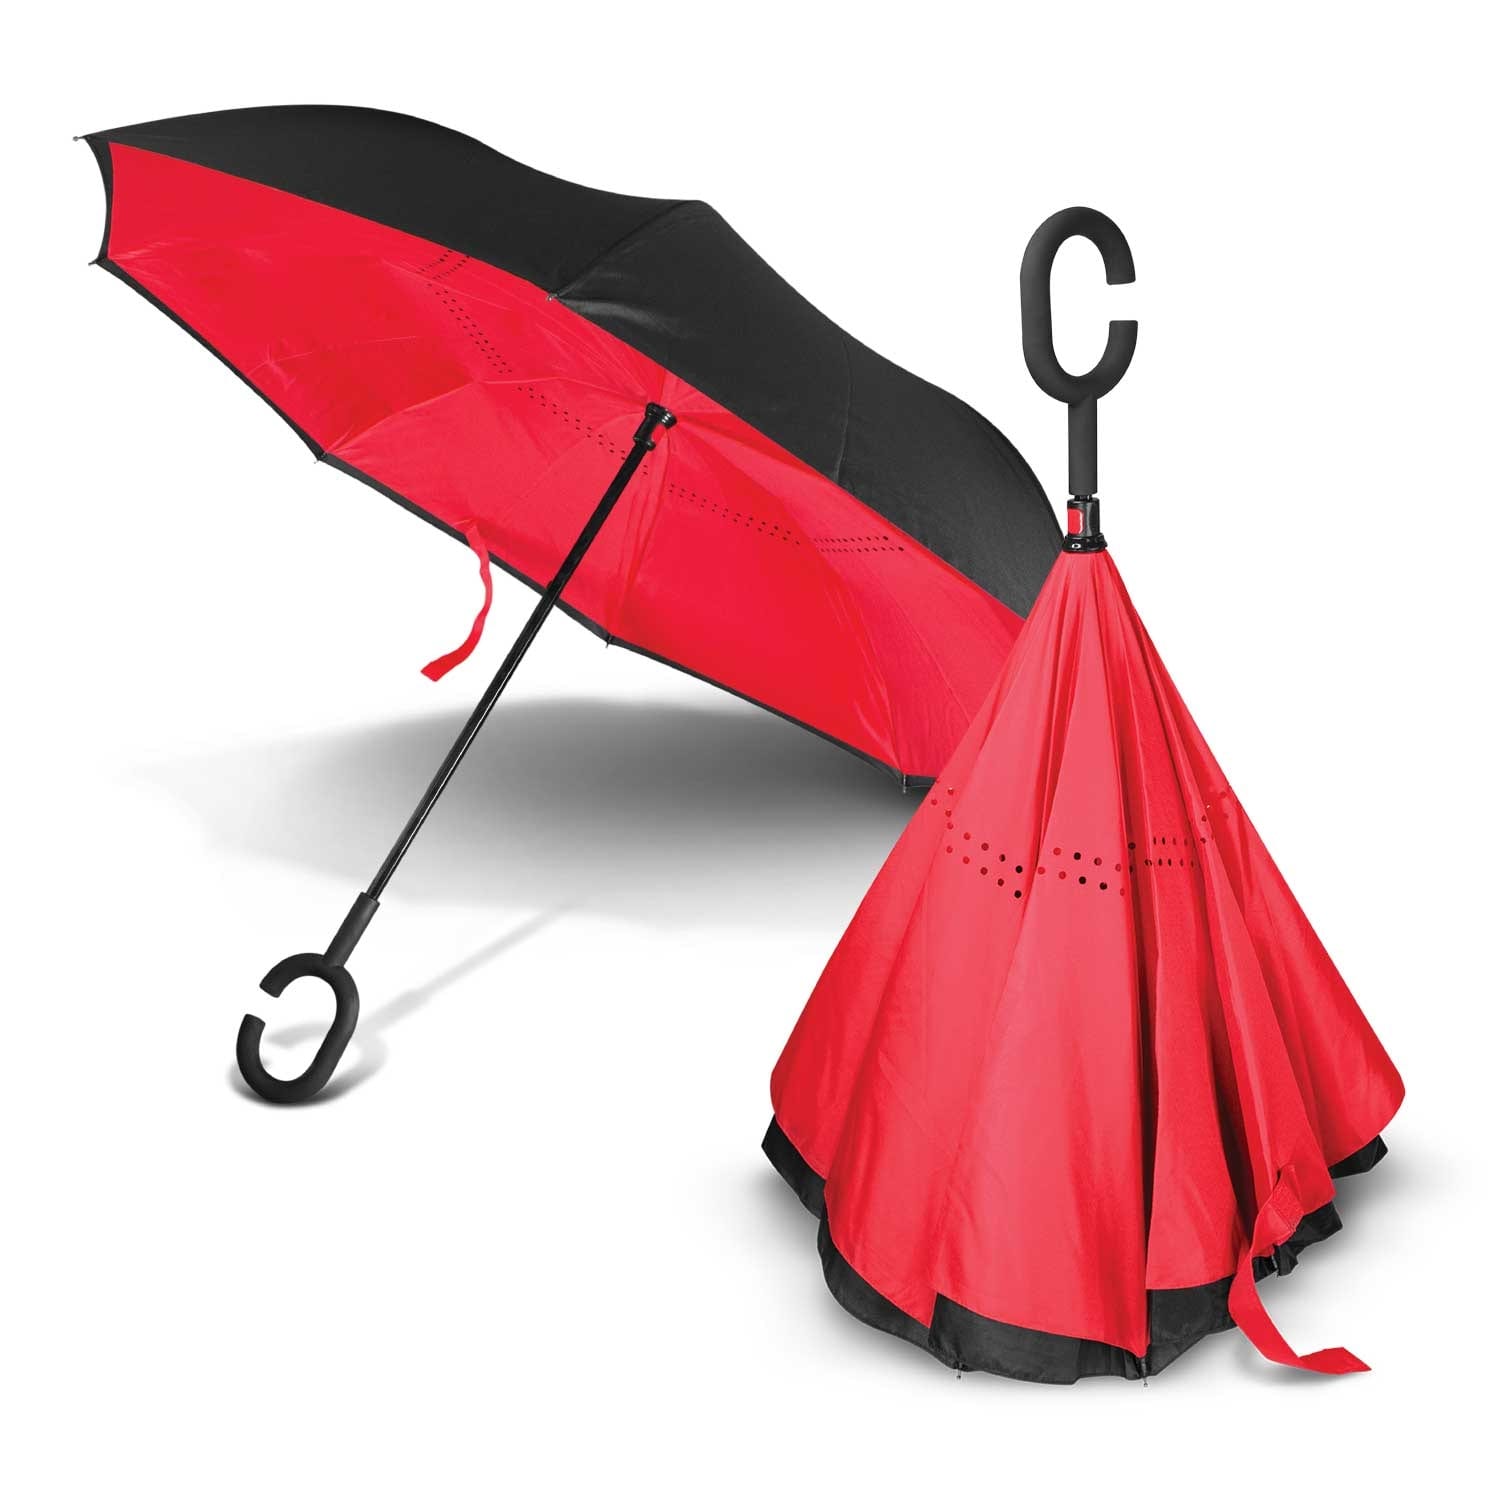 Trends Gemini Inverted Umbrella Gemini